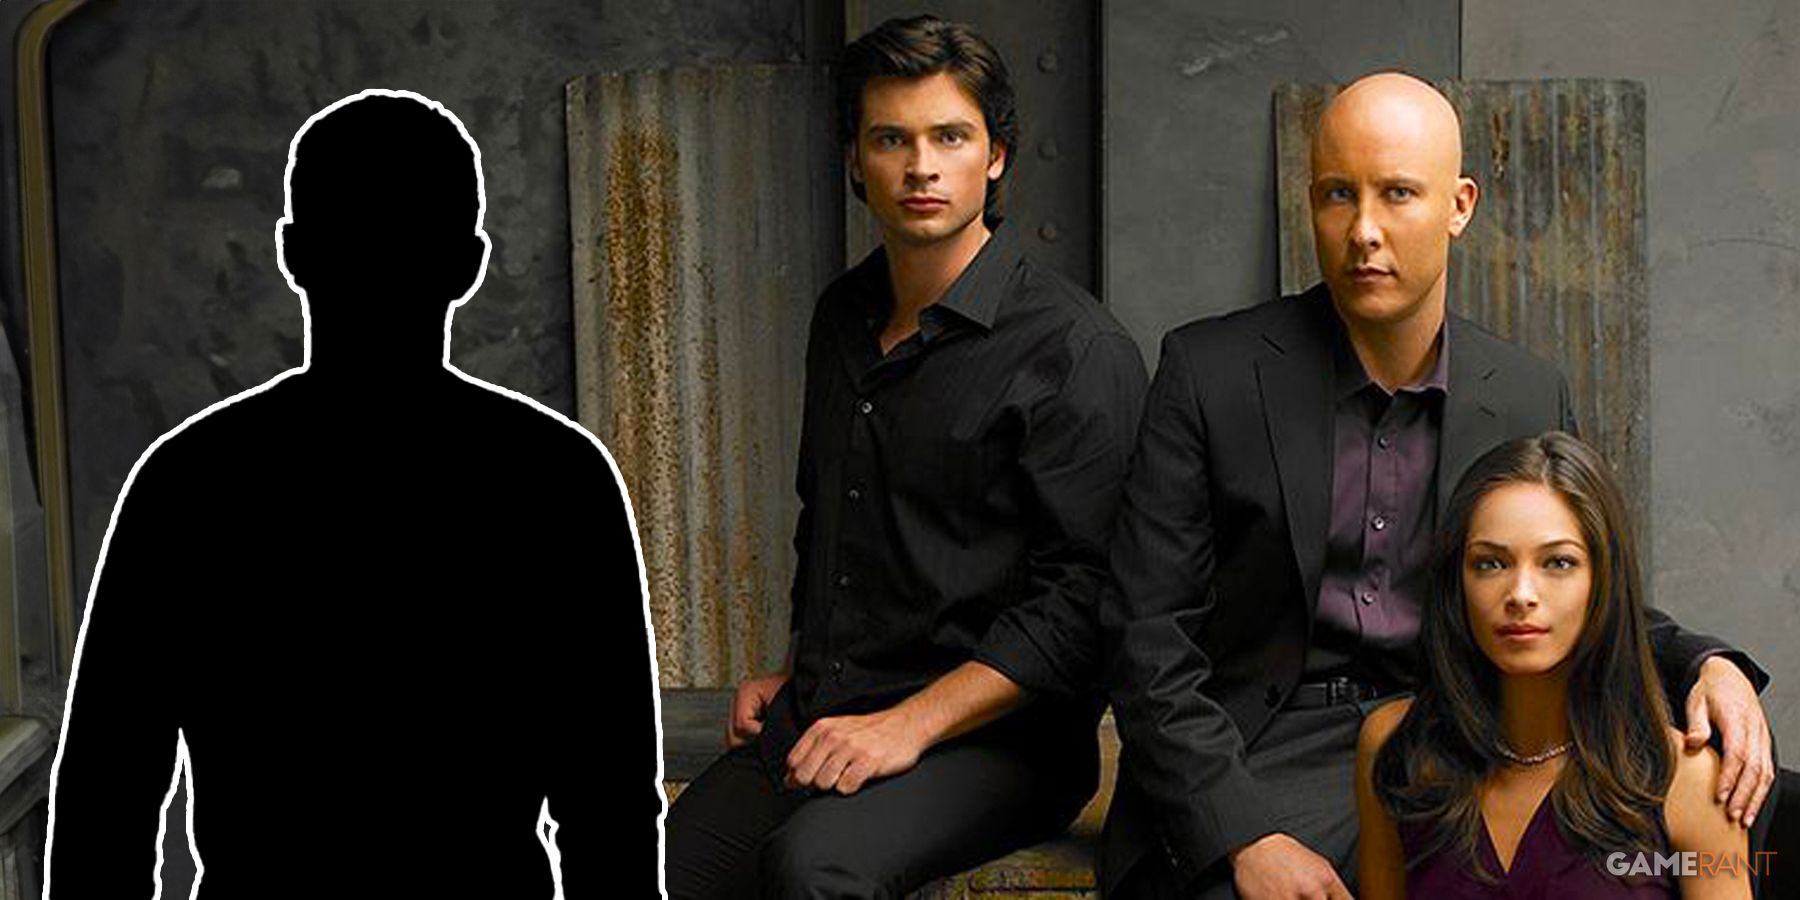 Smallville Michael Rosenbaum Nicholas Hoult Lex Luthor Superman Legacy Cast